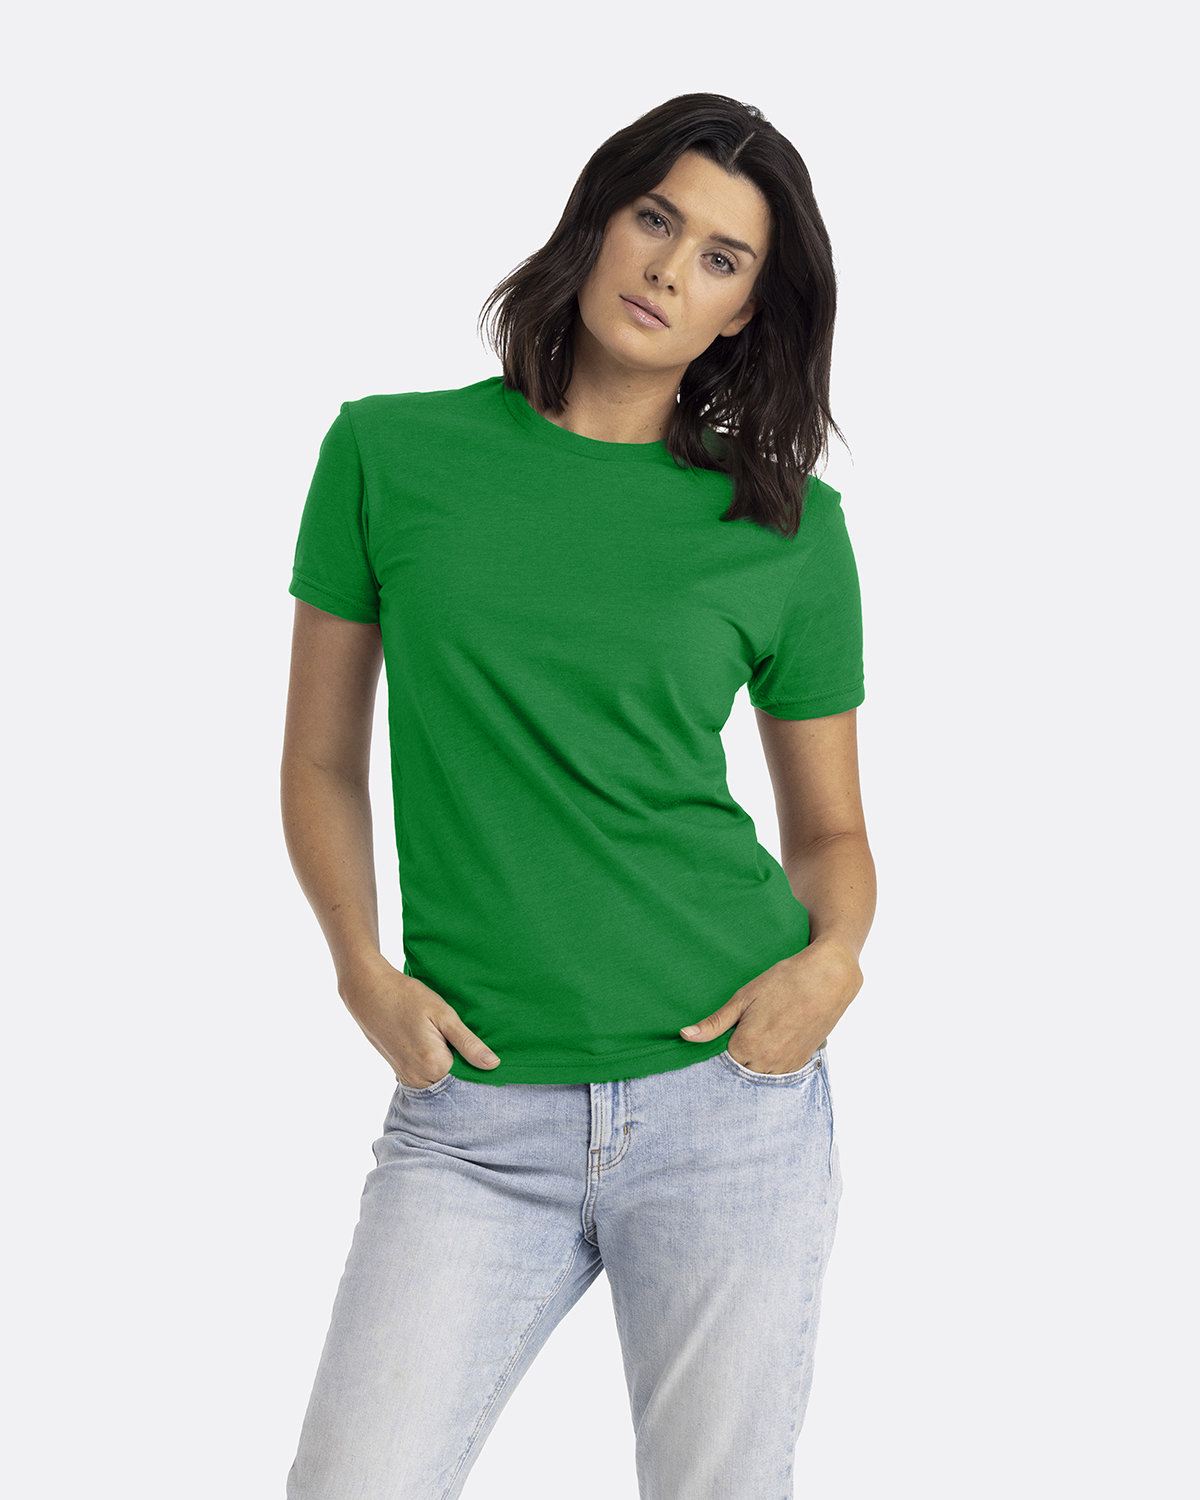 Next Level Apparel Unisex CVC Crewneck T-Shirt KELLY GREEN 